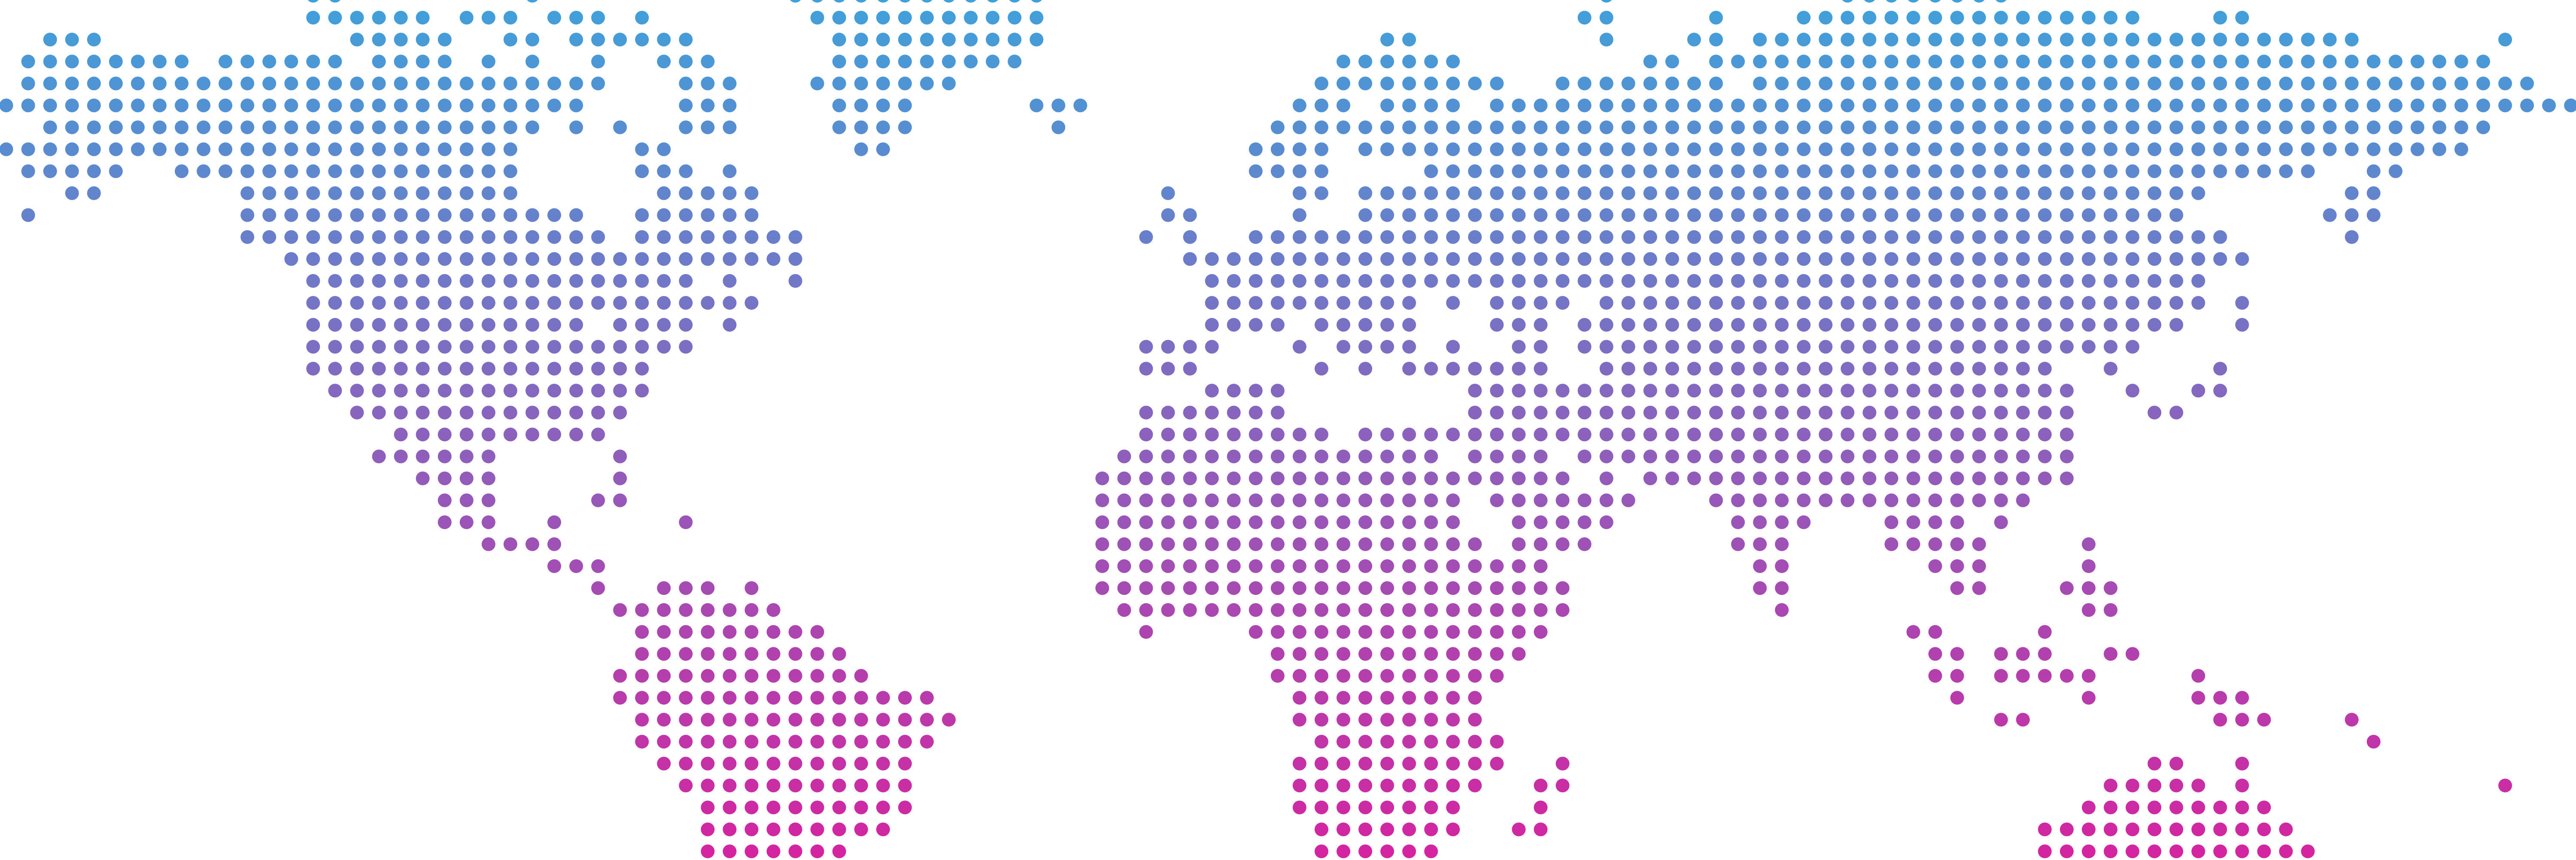 Grafik: Weltkarte aus Pixeln im blau lila Farbverlauf auf weißem Hintergrund
